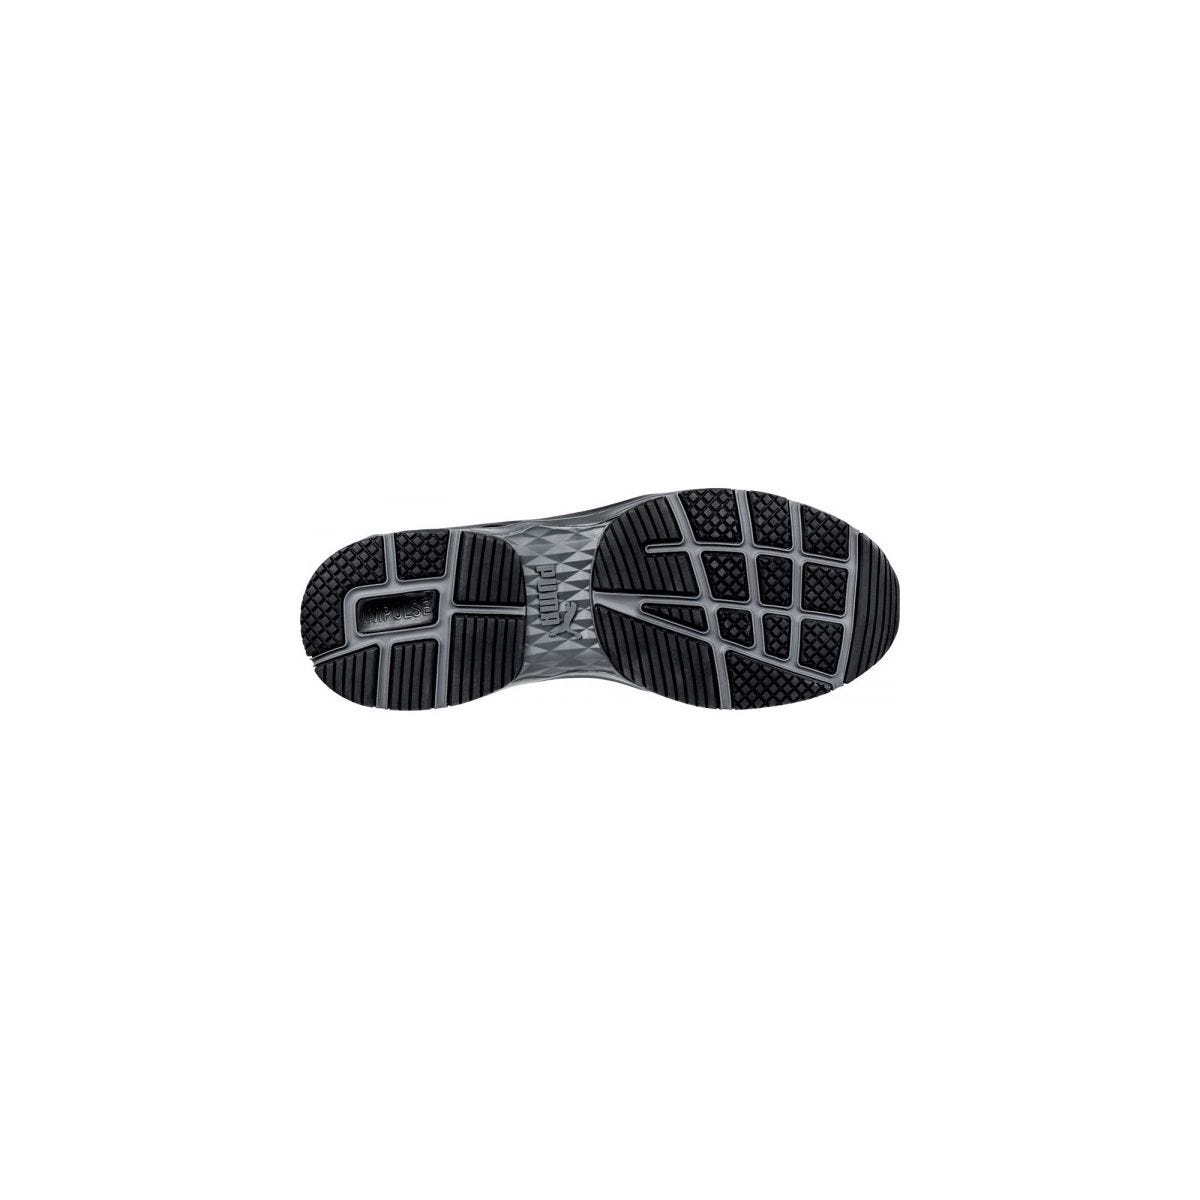 Chaussures de sécurité Velocity 2.0 Noir Low S3 - Puma - Taille 48 4